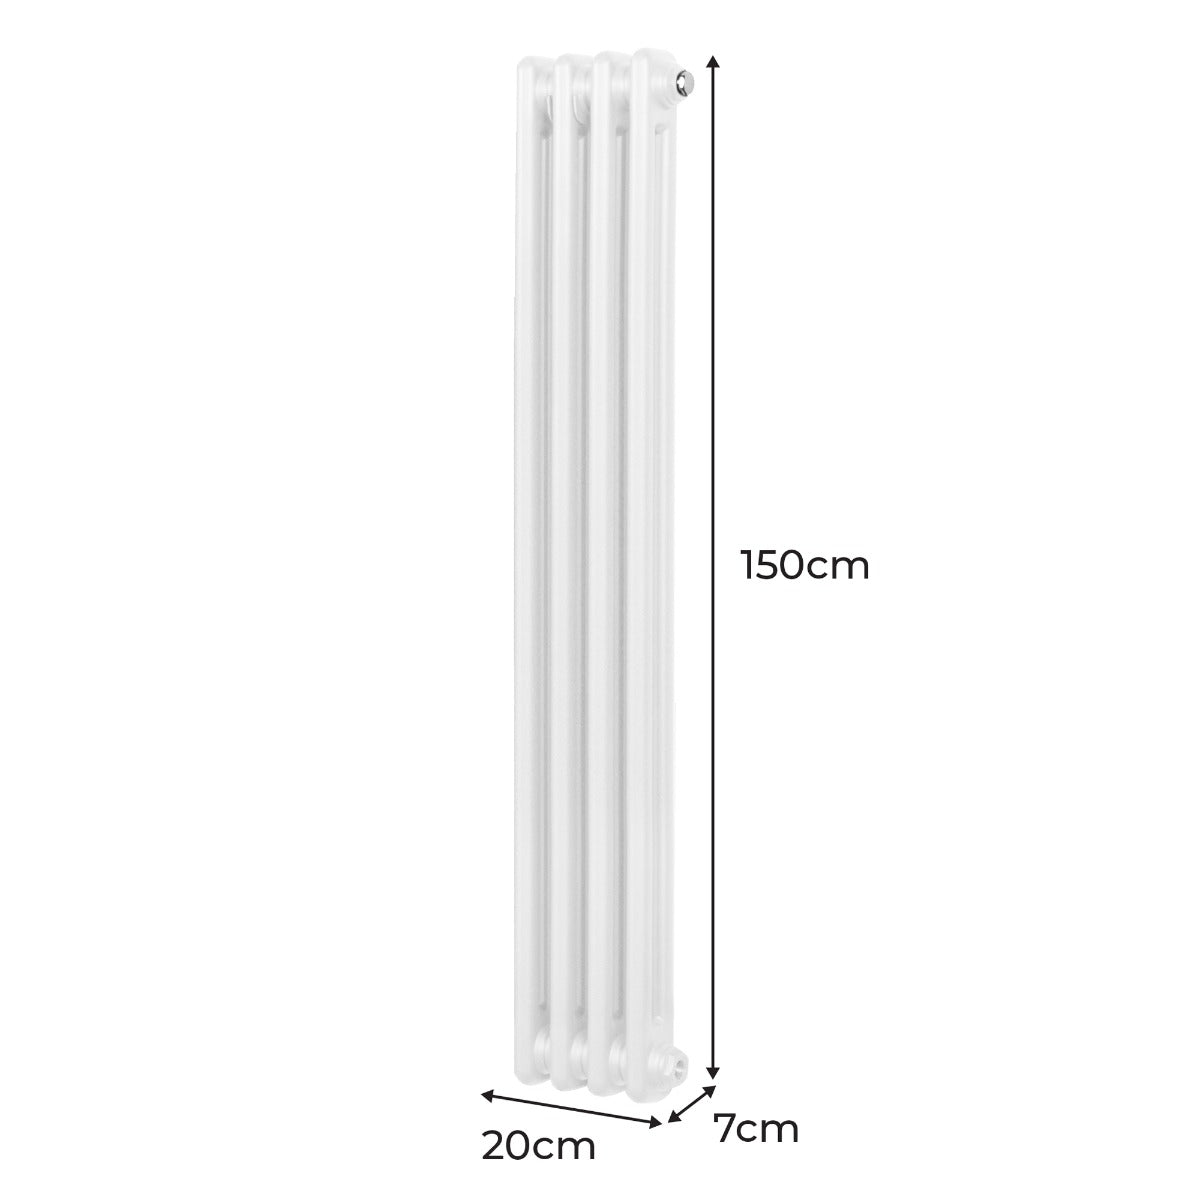 Radiador Tradicional Vertical de 2 columnas - 1500x 202mm - Blanco